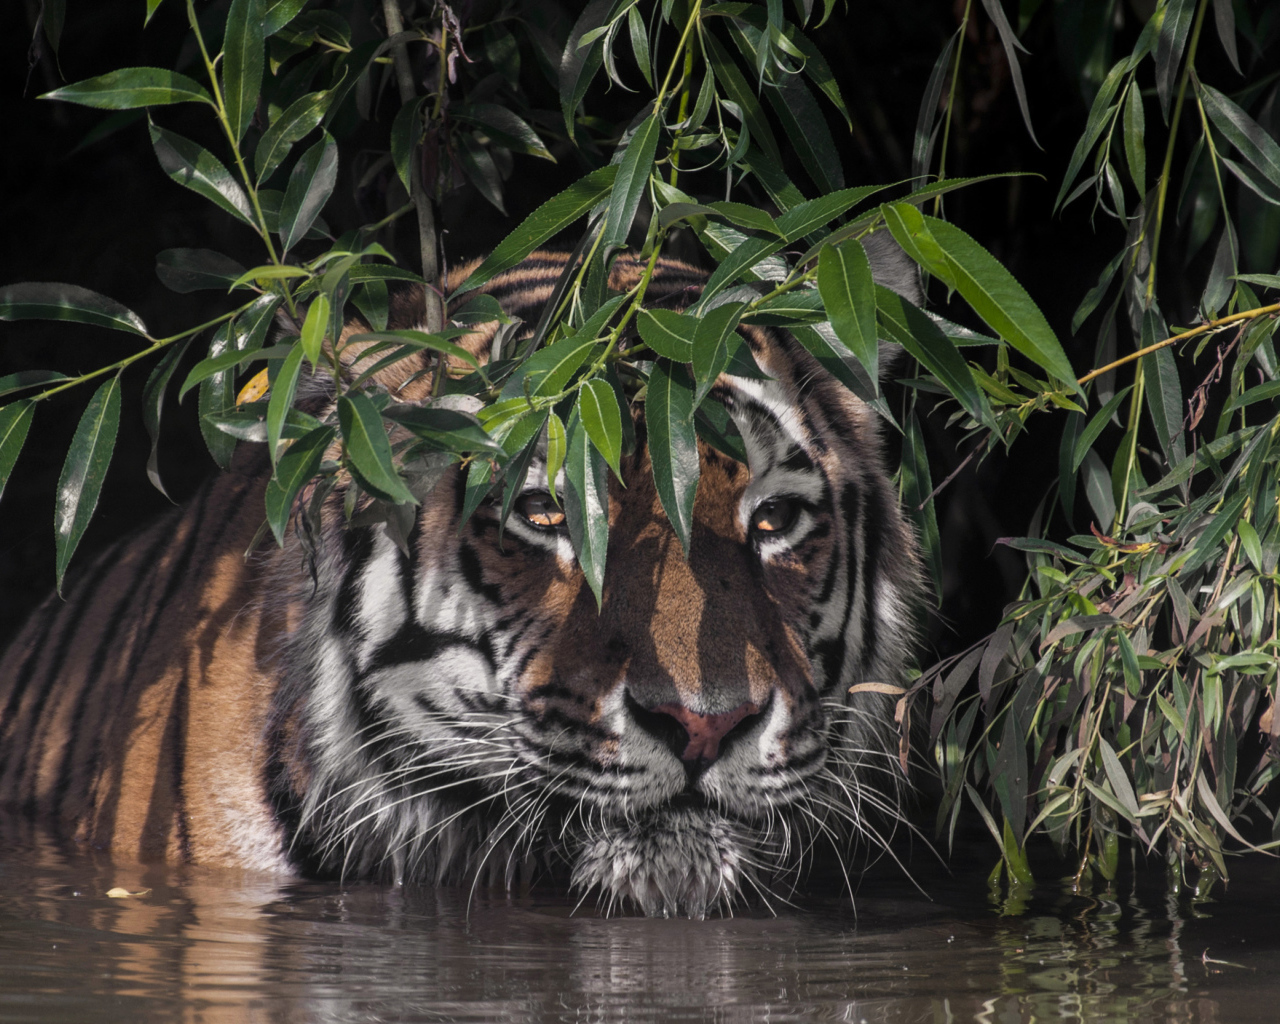 Большой полосатый тигр в воде в зеленых листьях